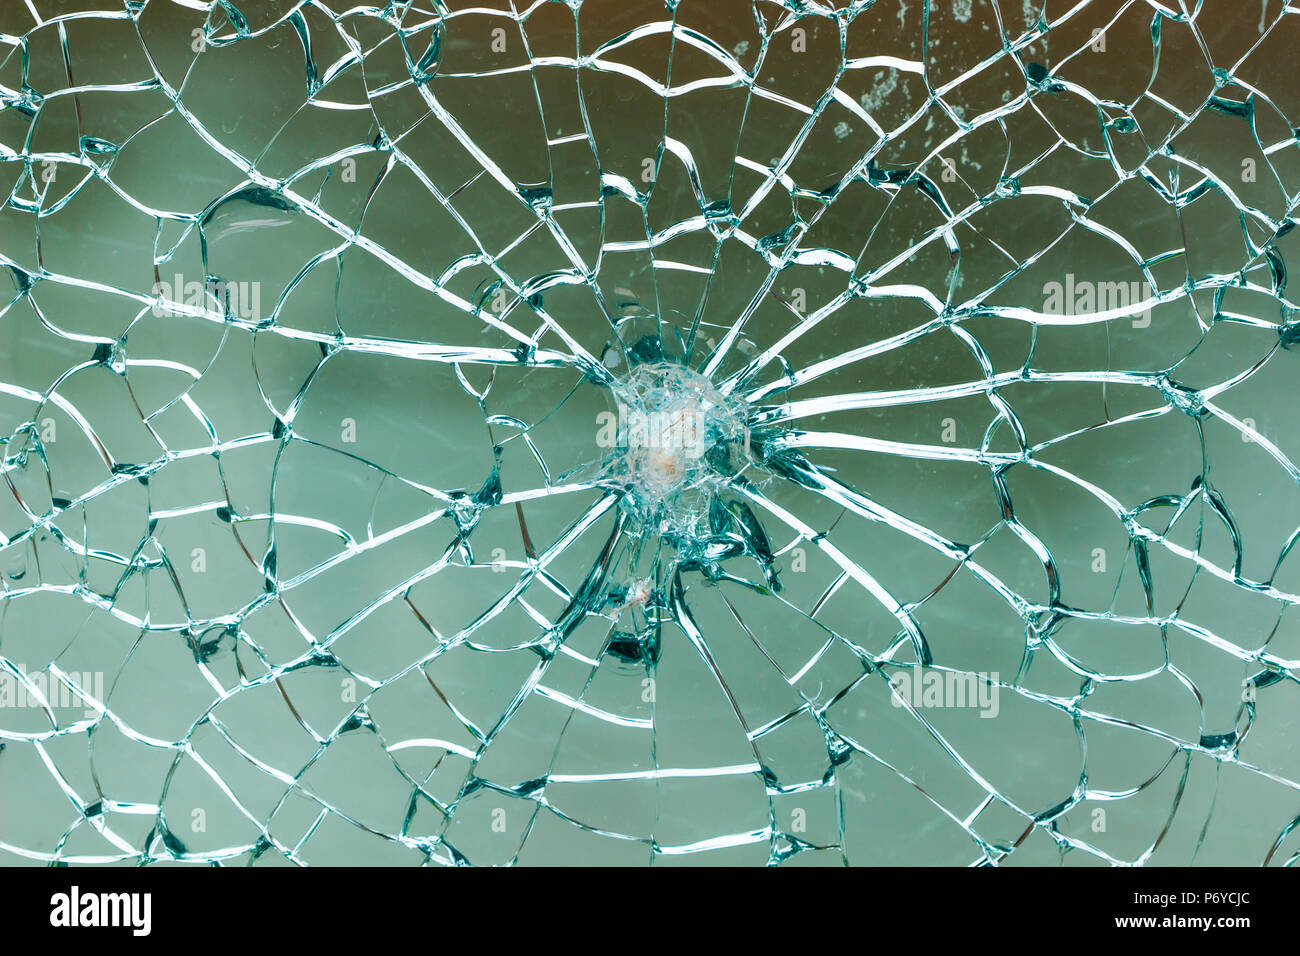 Zerbrochenen Spiegel Hintergrund/Risse im Glas/Crackle Mosaik Hintergrund  Stockfotografie - Alamy